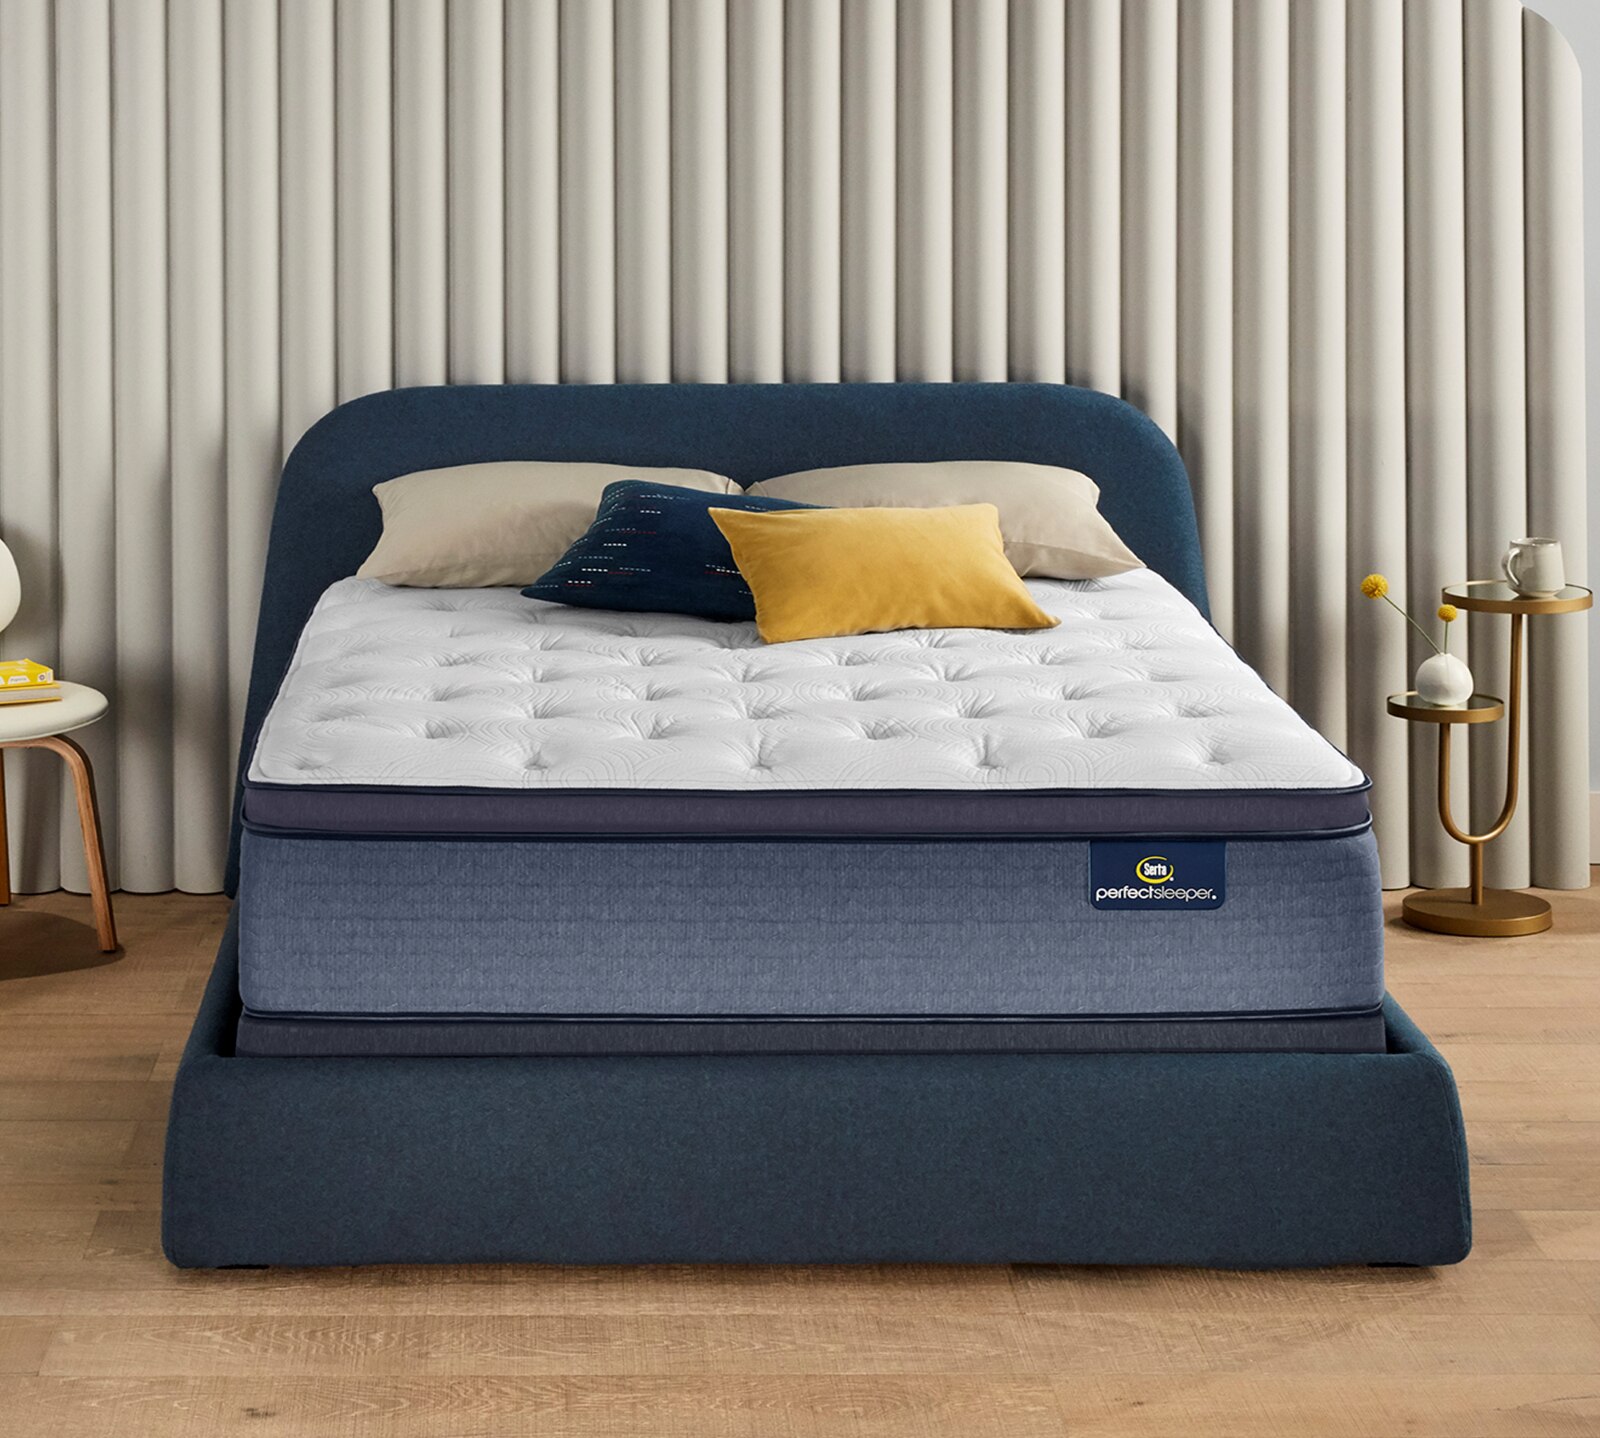 mattressfirm.com | Serta Perfect Sleeper® Cobalt Coast 15" Plush Pillow Top Mattress